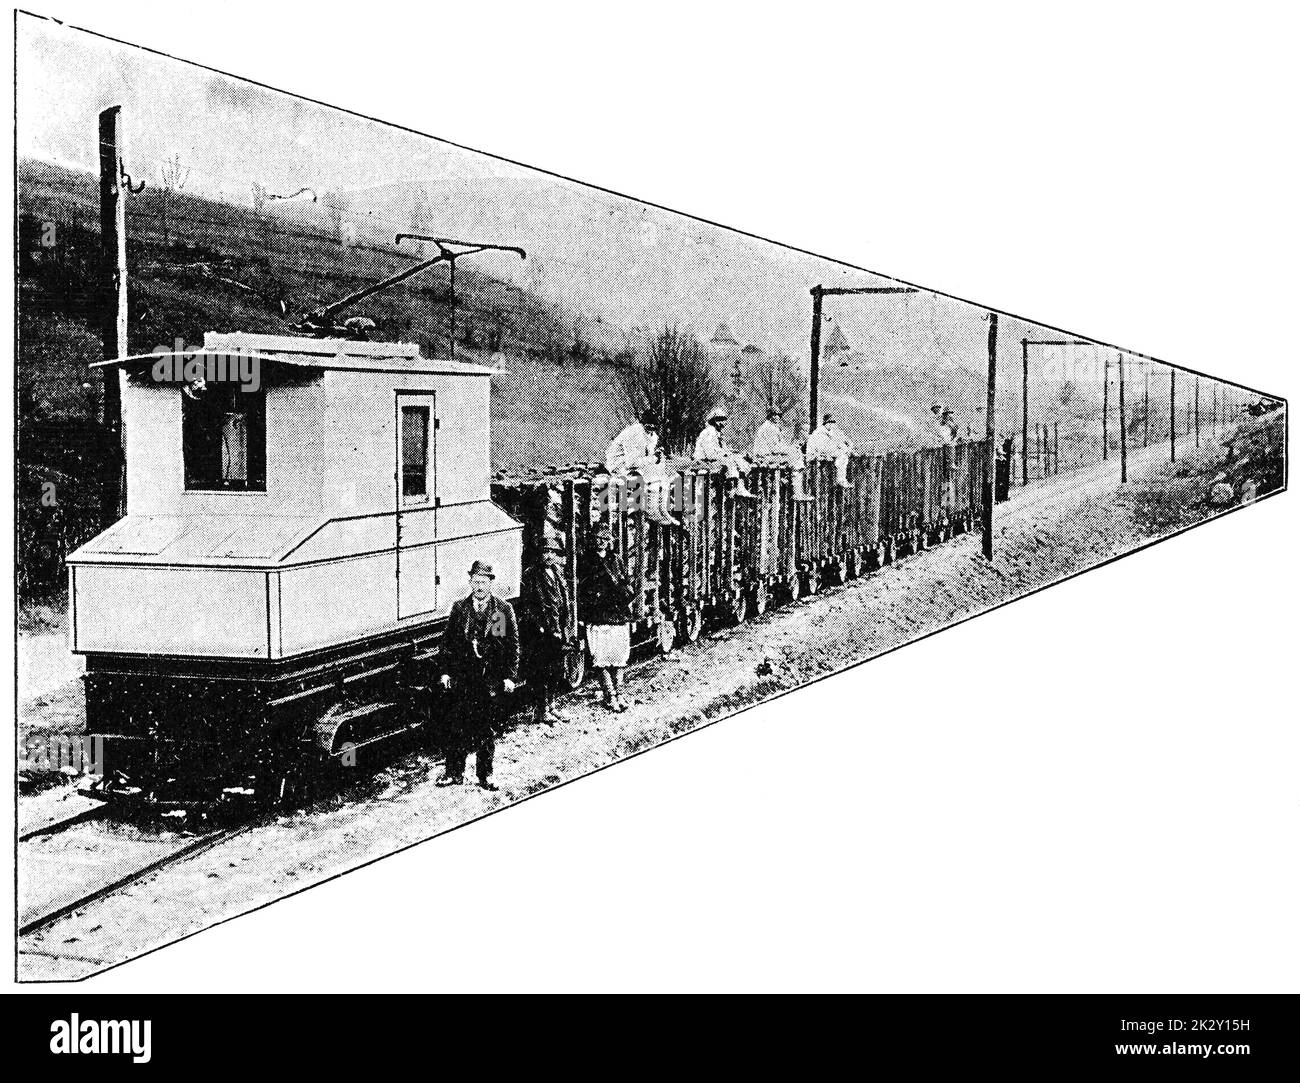 Rail léger électrique avec ligne aérienne dans le sud de la Slavonie. Illustration du 19e siècle. Allemagne. Arrière-plan blanc. Banque D'Images